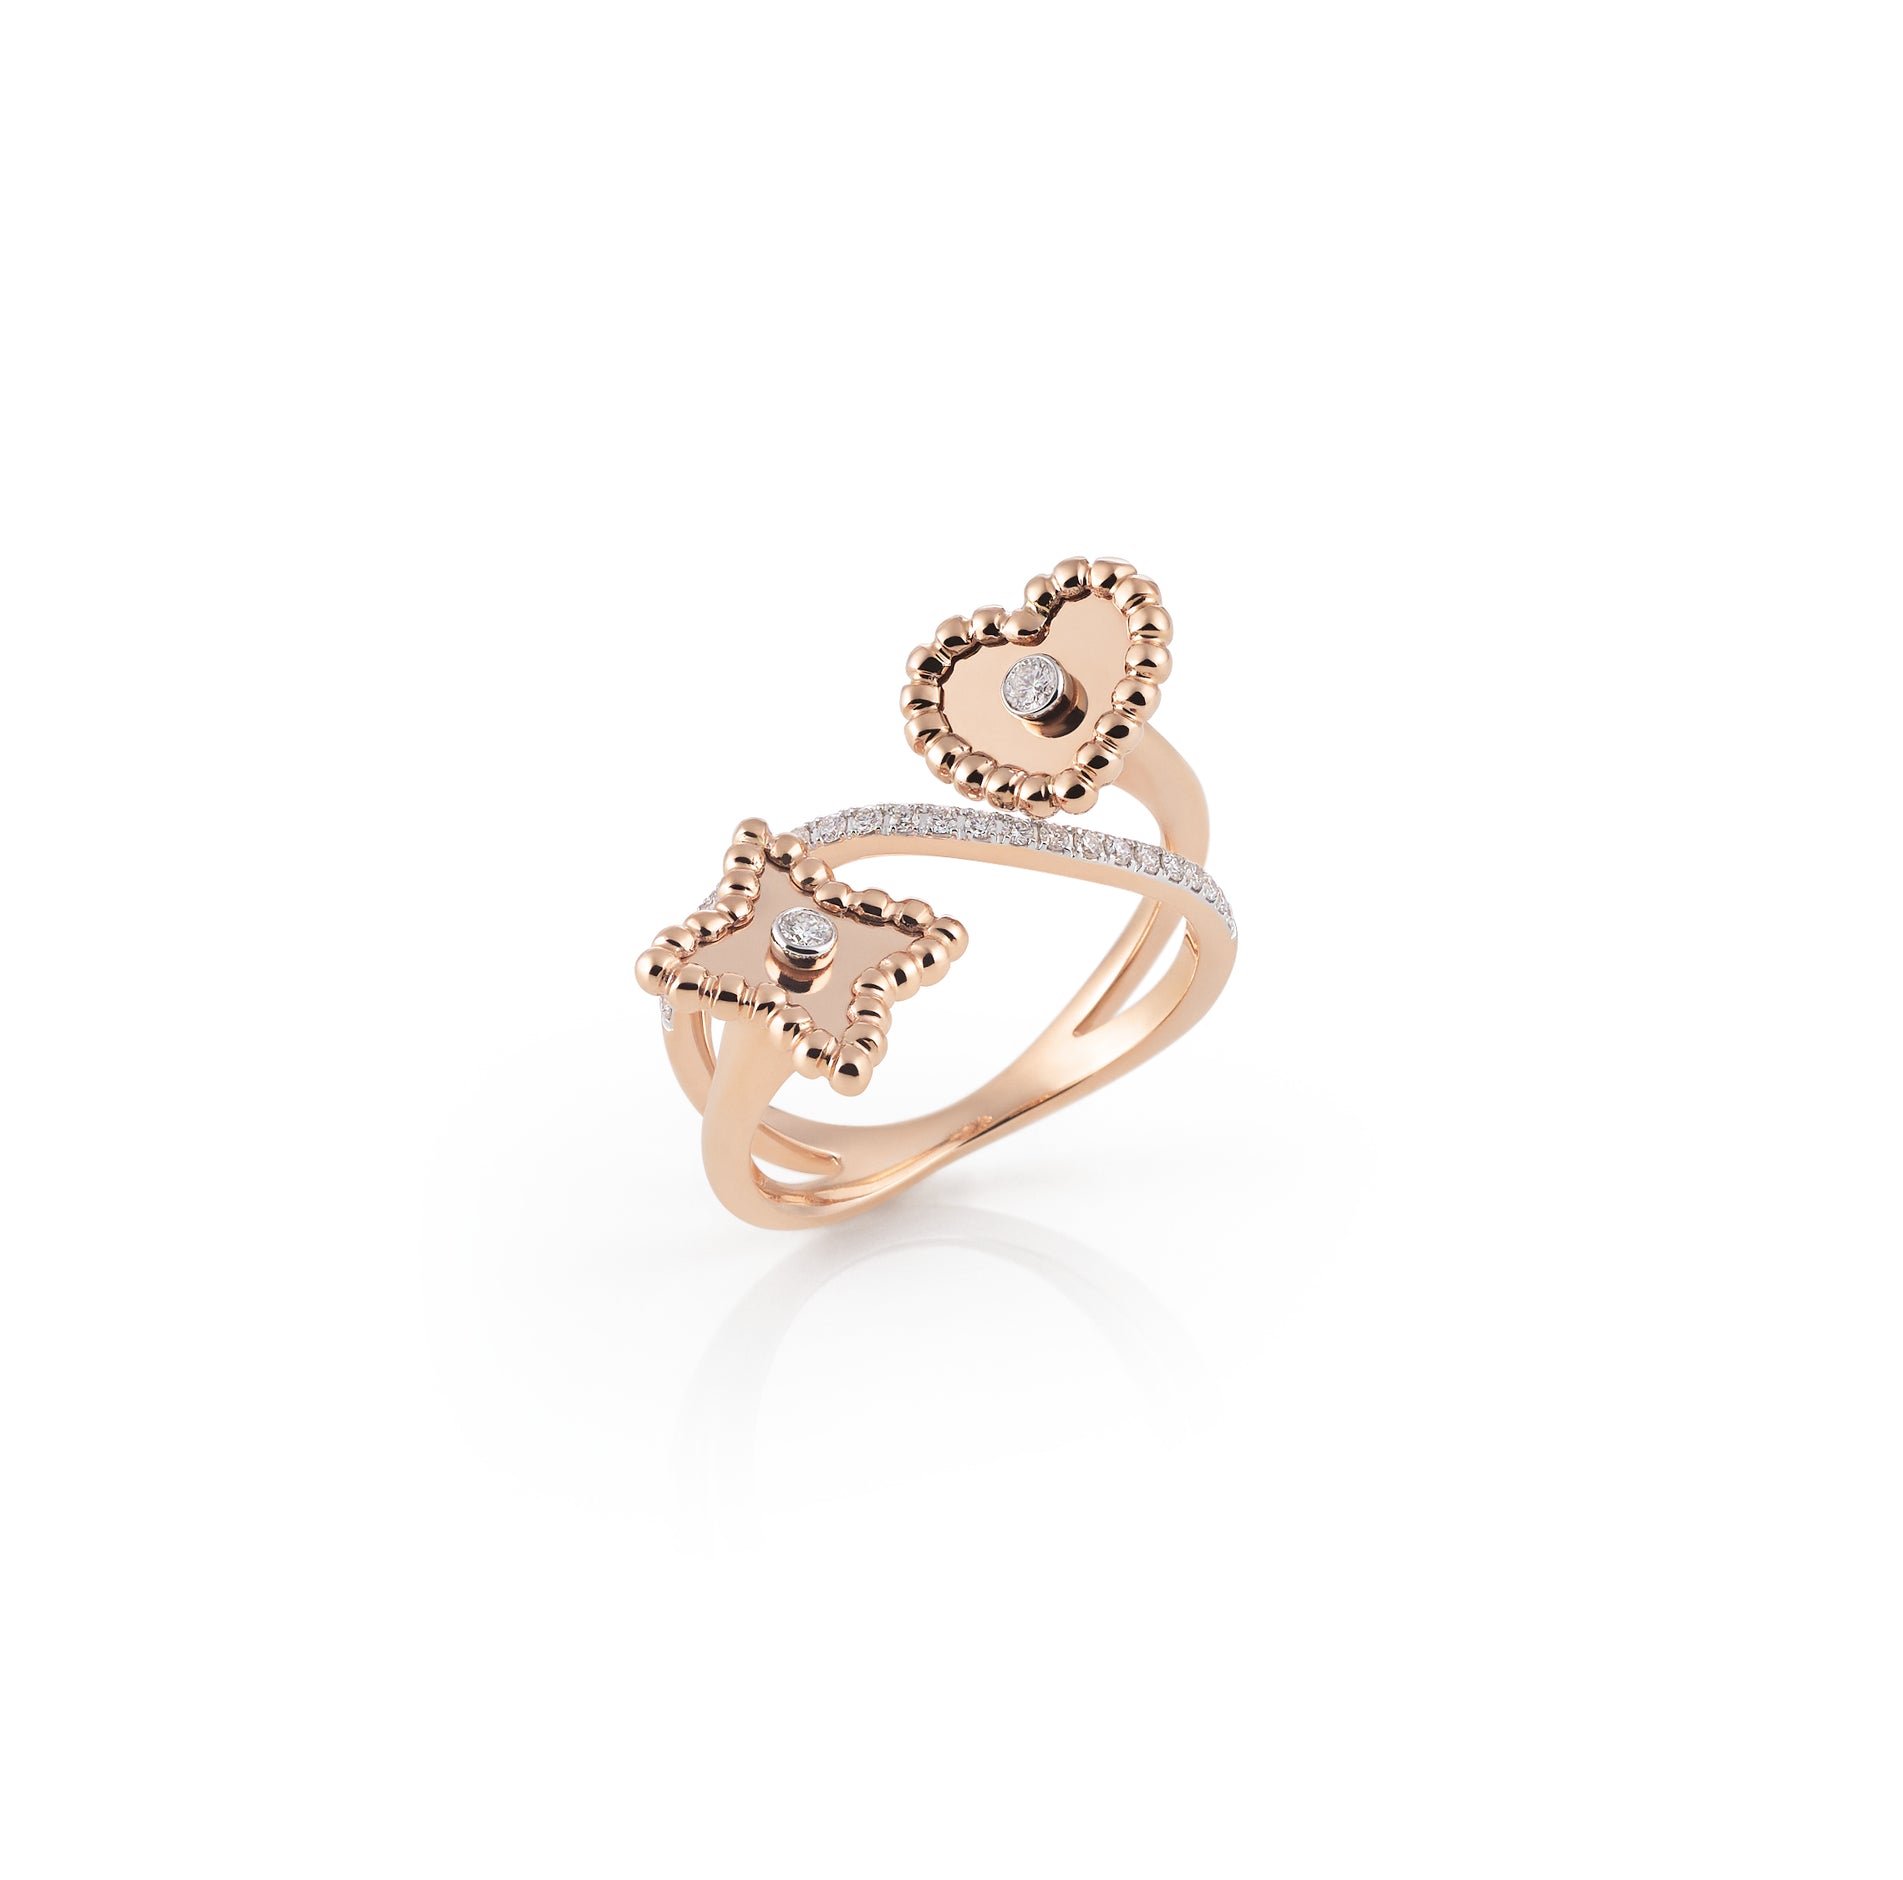 Al Coro Palladio Ring in 18k Rose Gold with White Diamonds - Orsini Jewellers